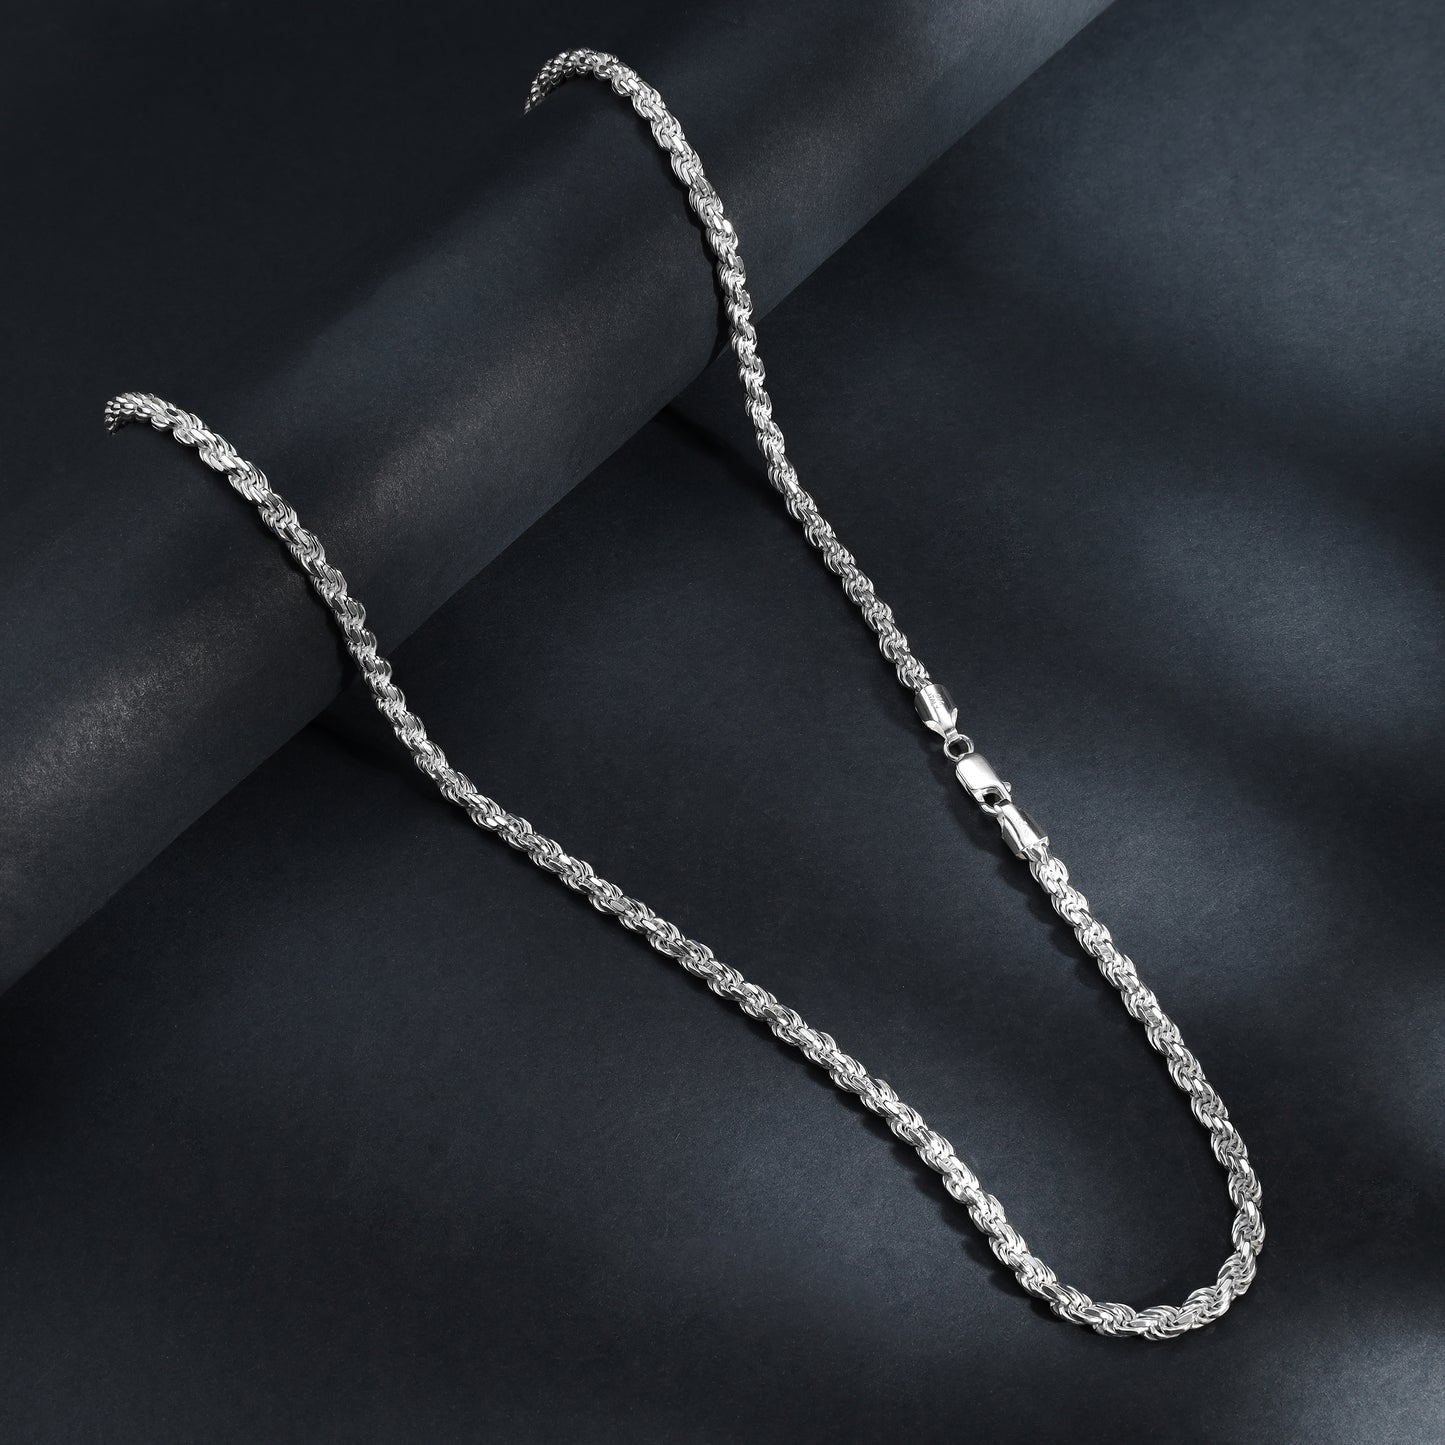 Kordelkette Rope Chain 5mm breit 60cm lang massiv 925 Sterling Silber (K1023)